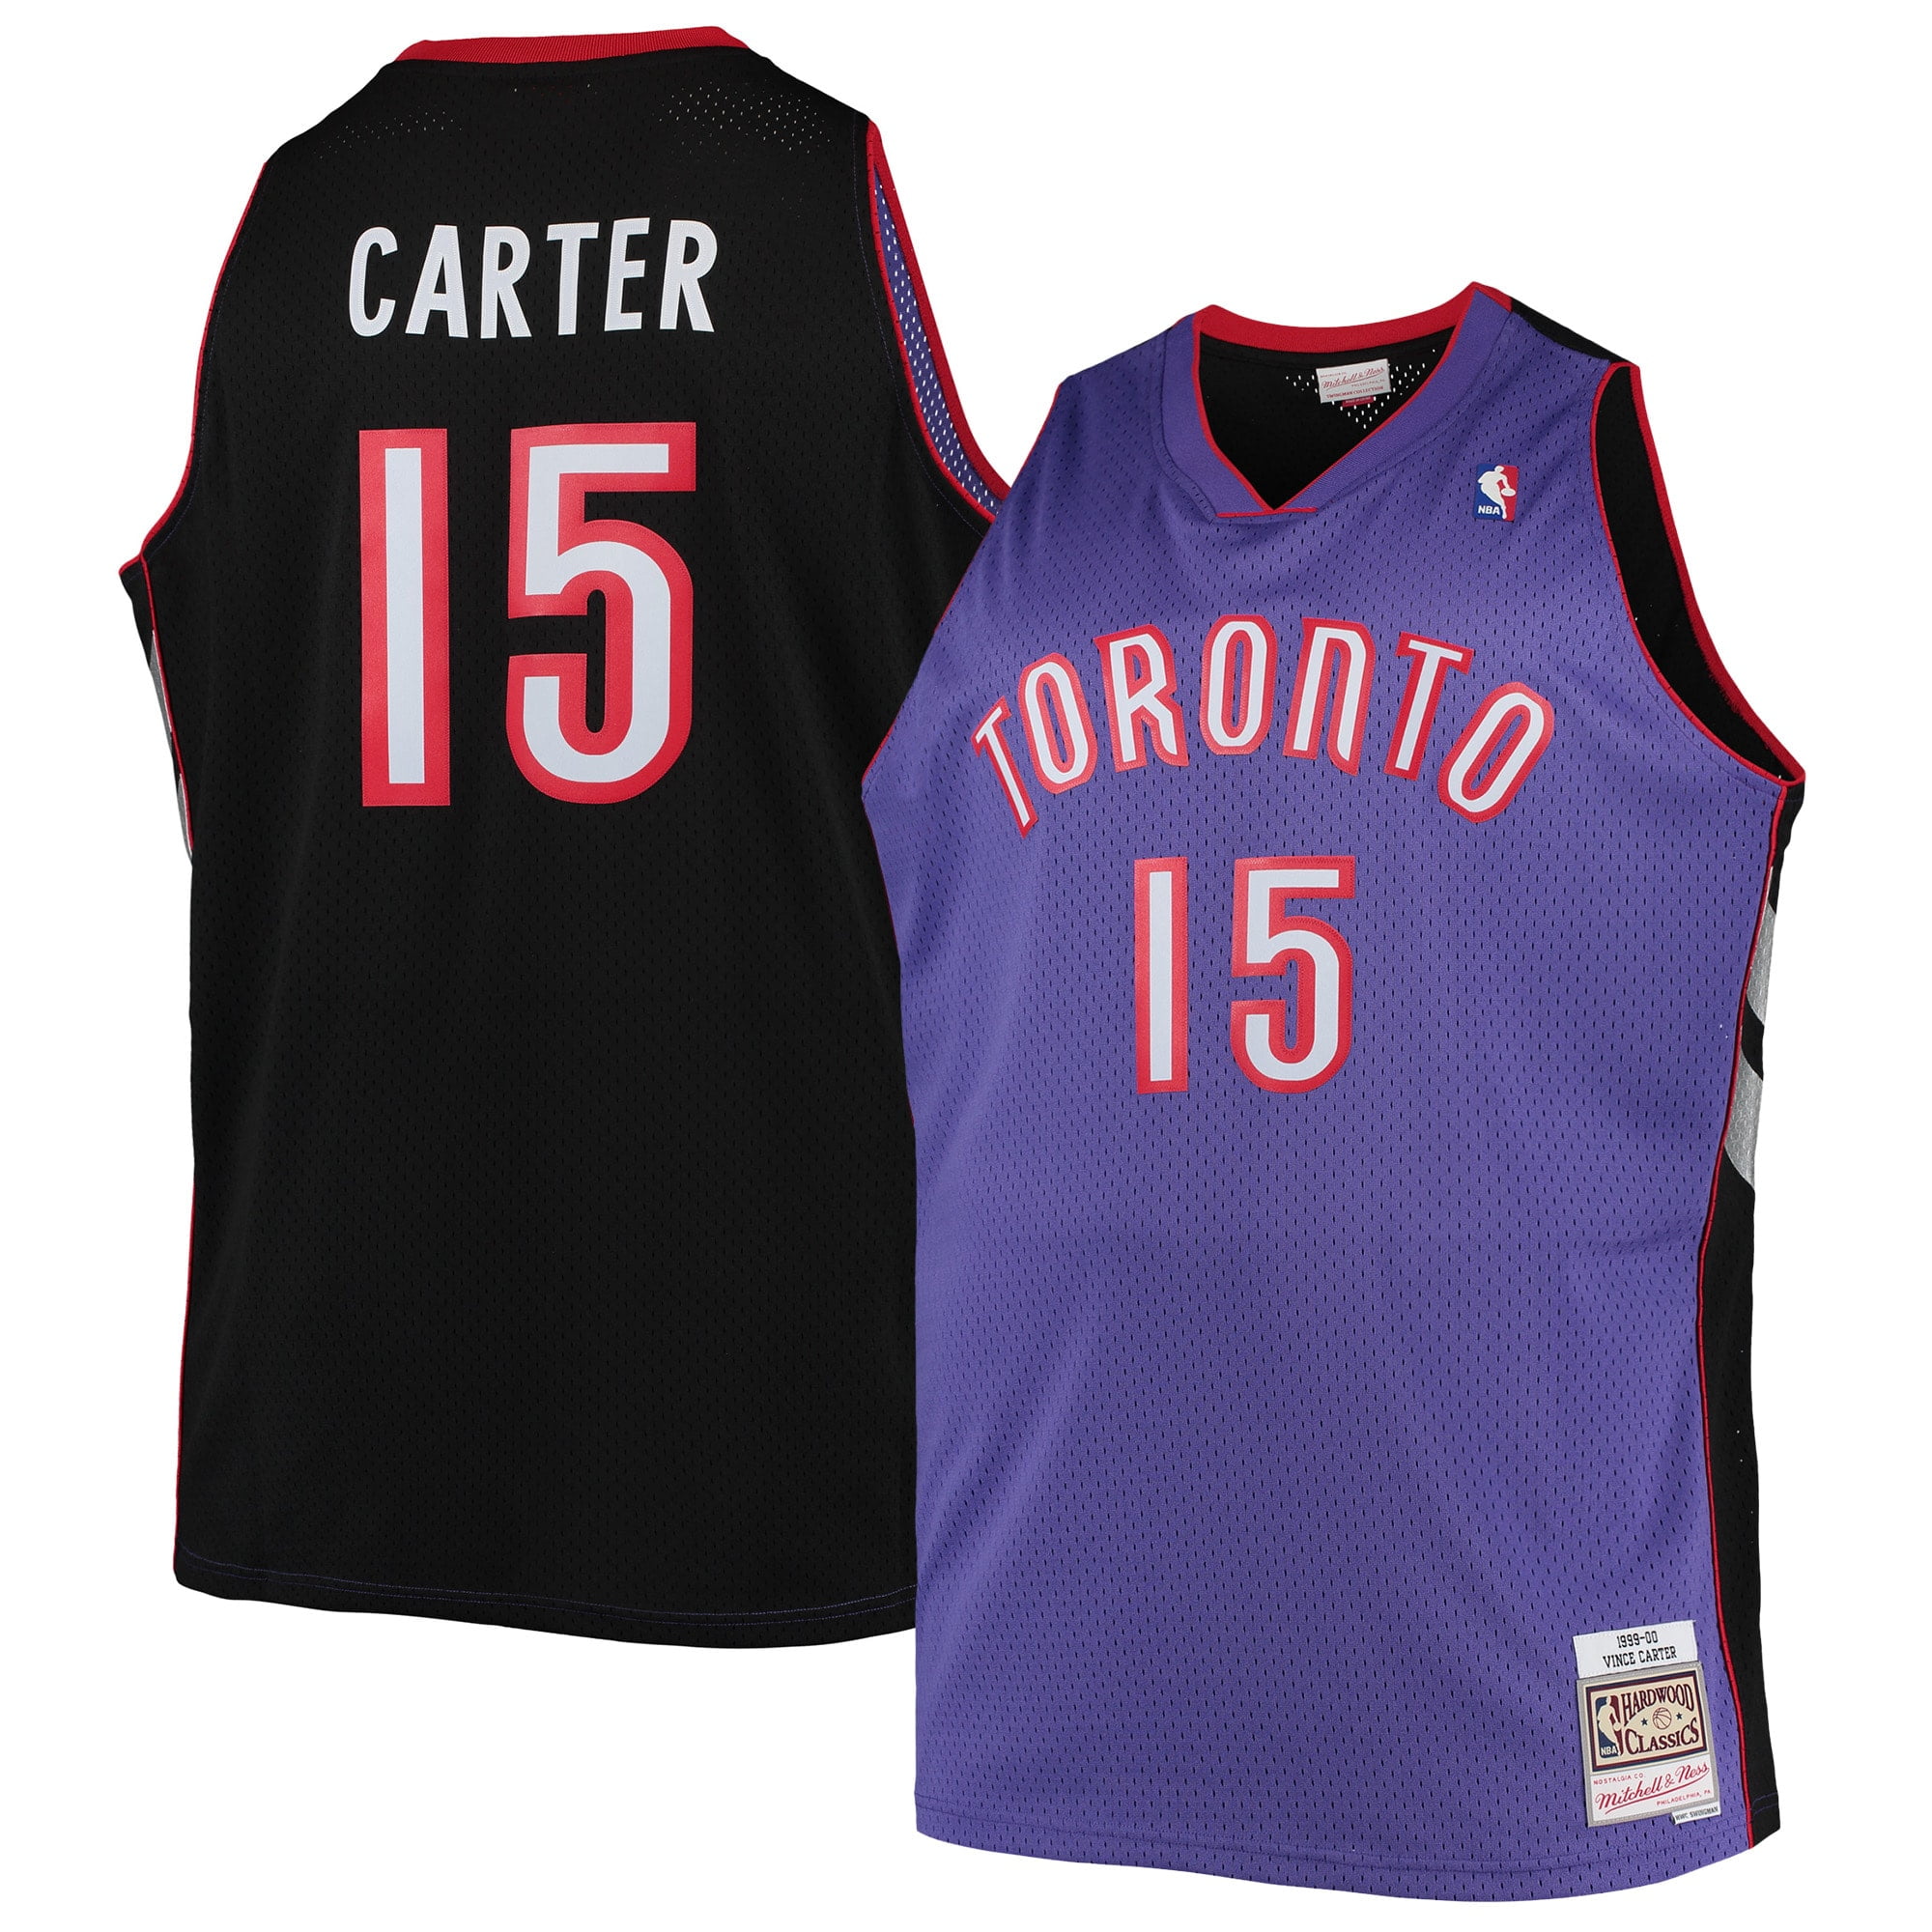 Vince Carter Autographed and Framed Toronto Raptors Jersey